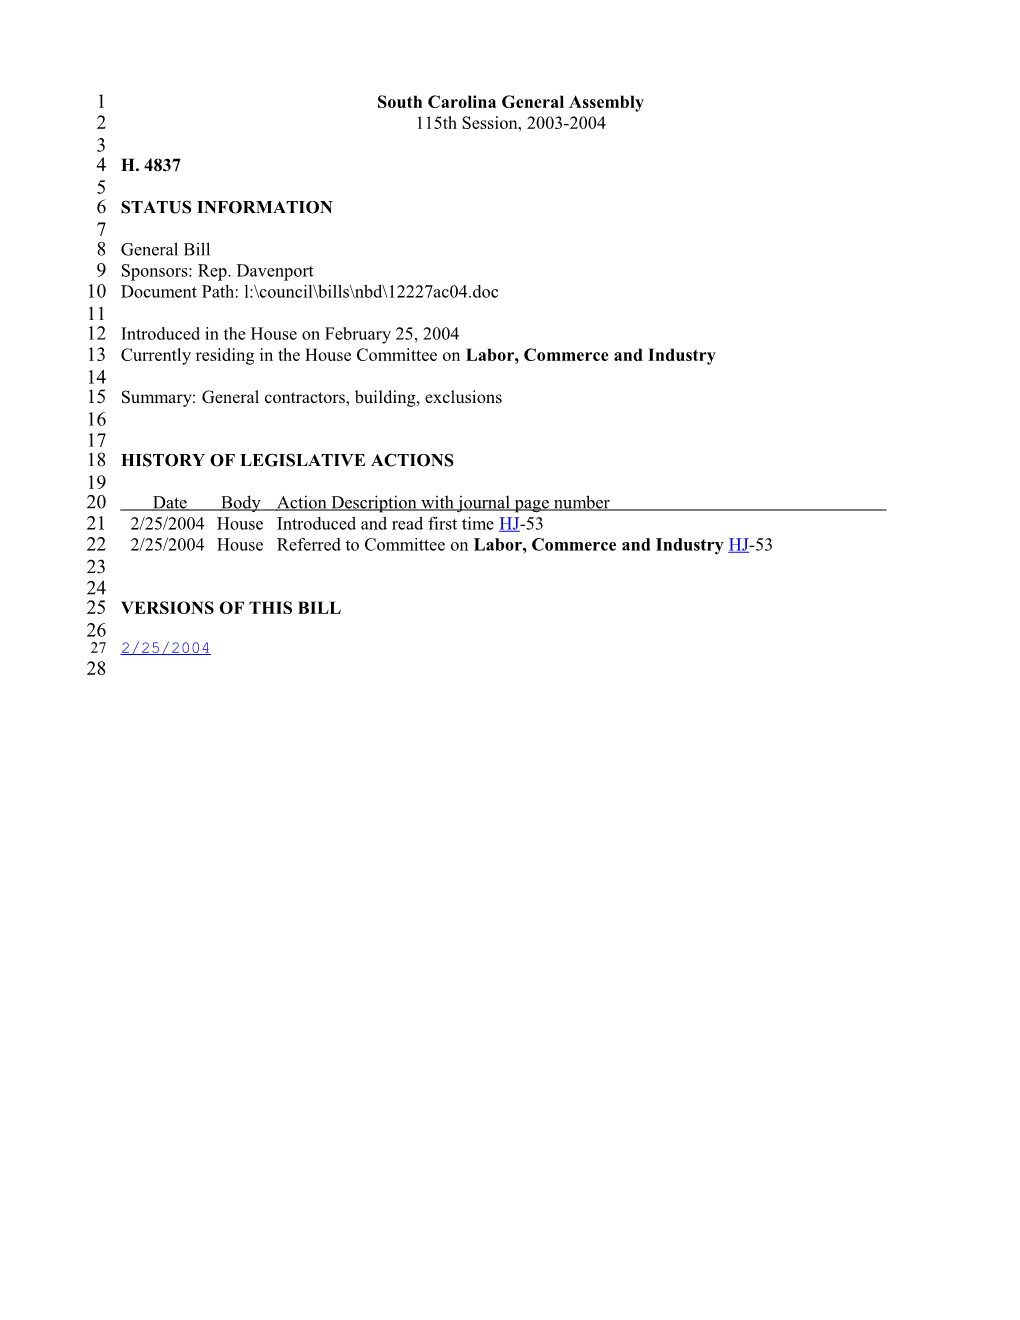 2003-2004 Bill 4837: General Contractors, Building, Exclusions - South Carolina Legislature Online